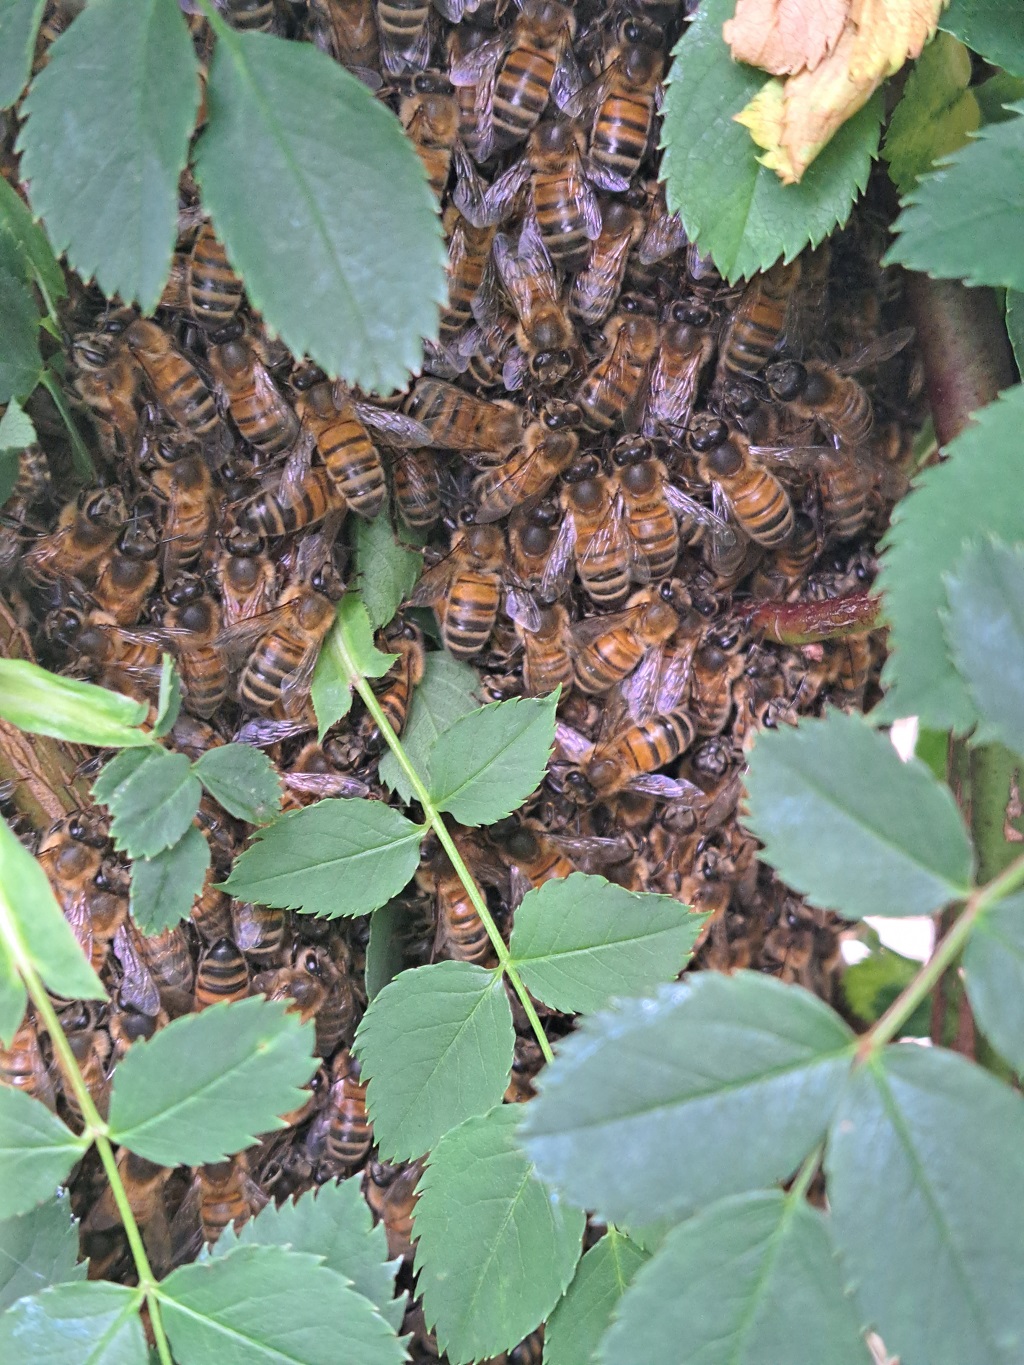 Bees swarming into a ball